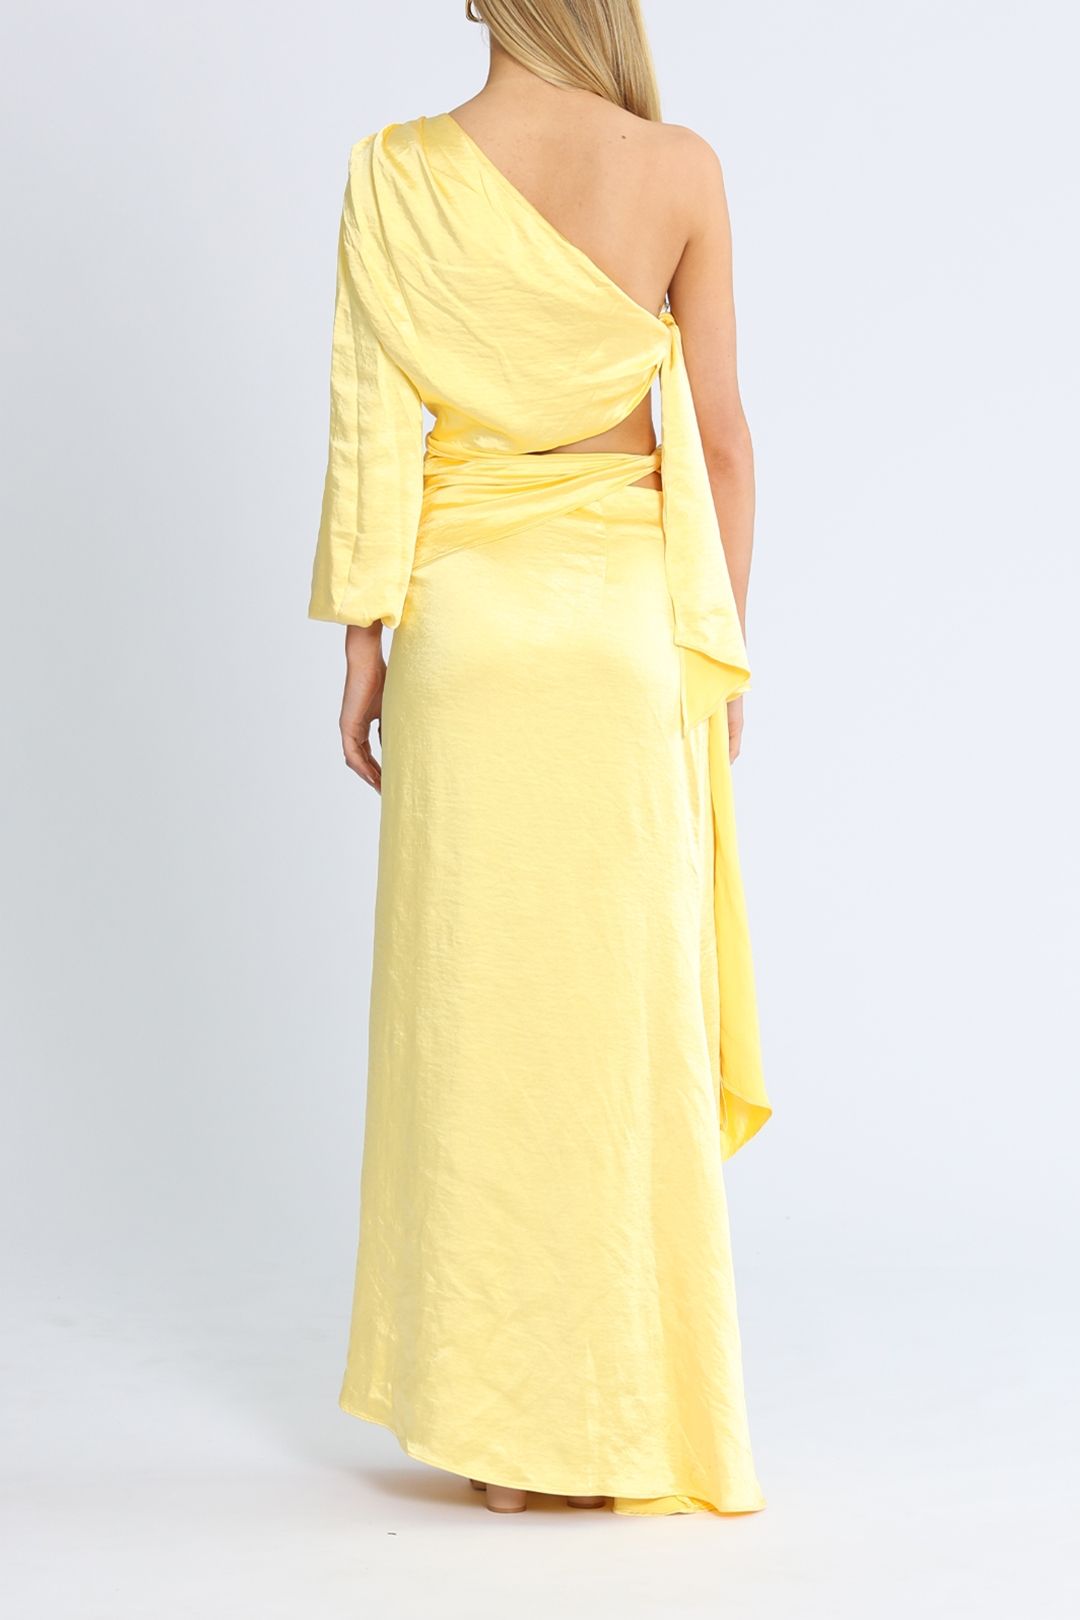 Elliatt Memento Dress Yellow maxi